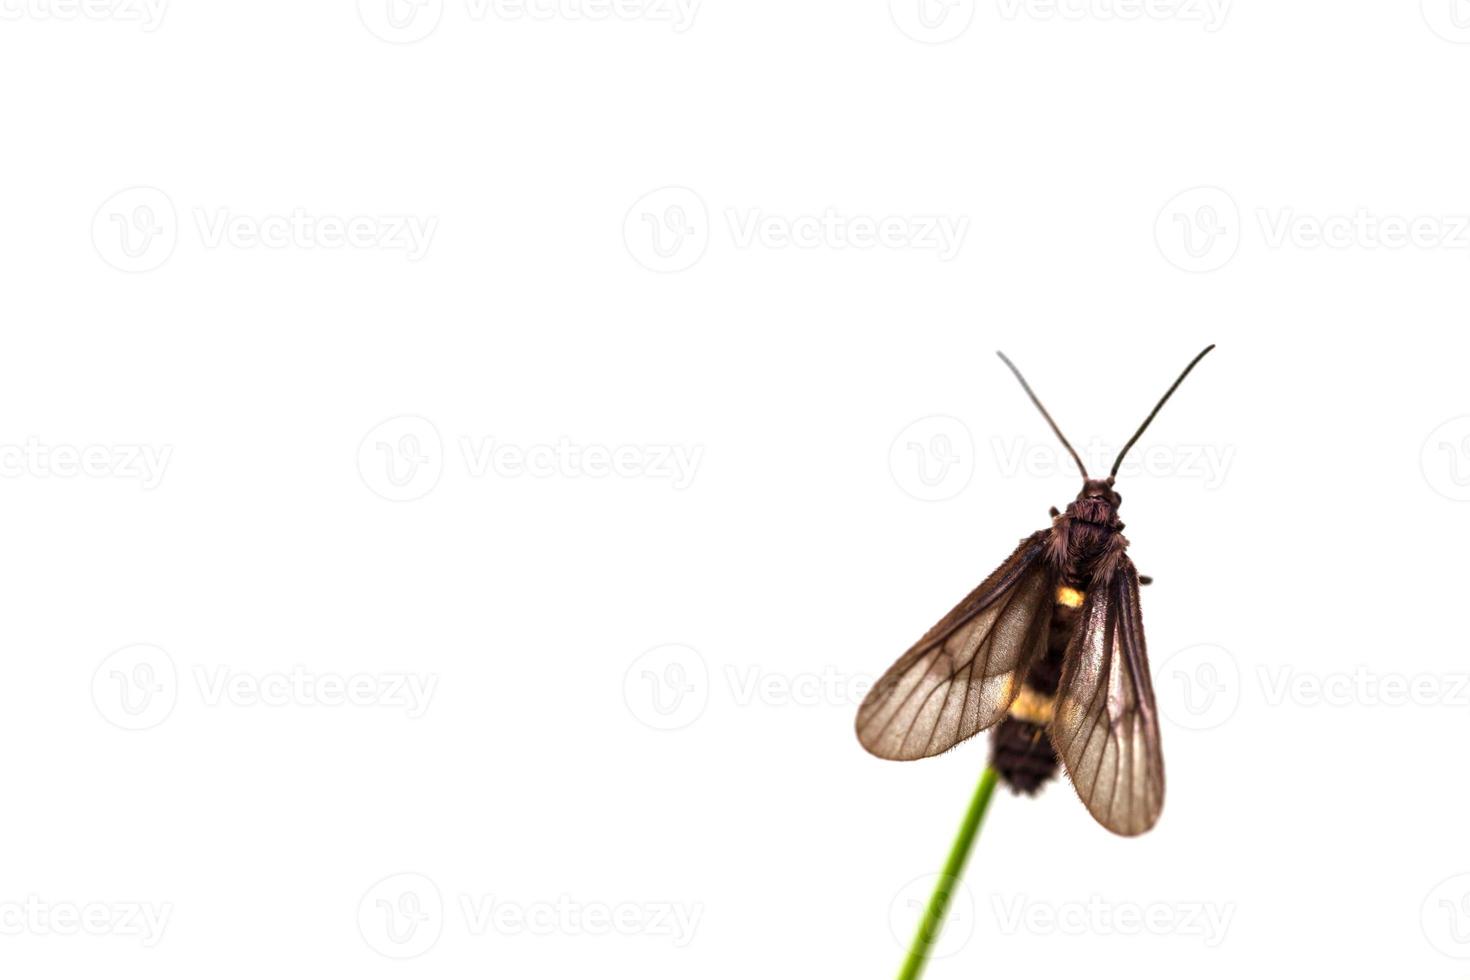 zwarte vlinder neergestreken op blad foto